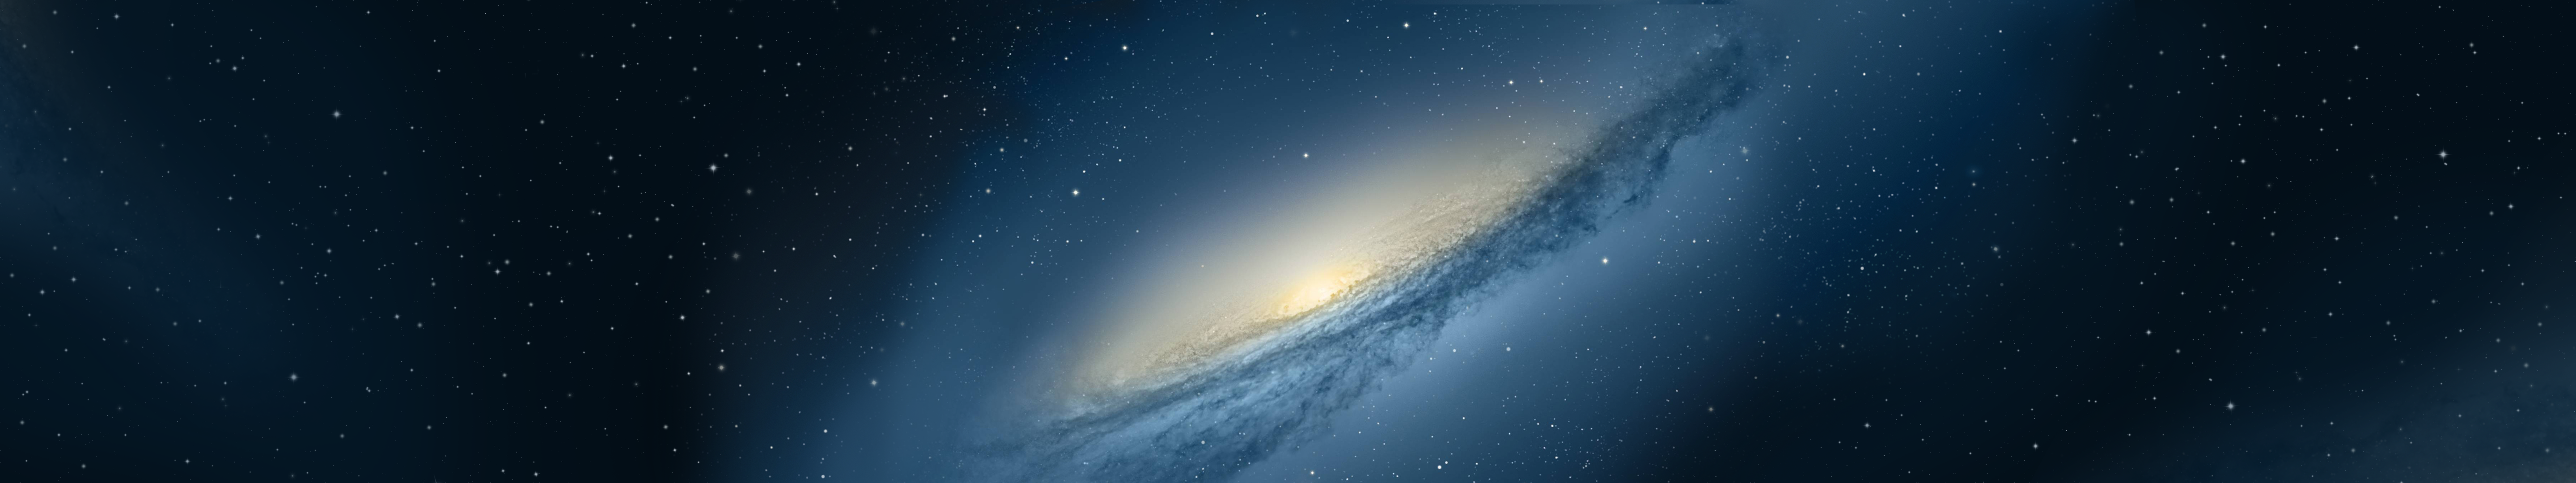 Moutain Lion Galaxy: Hãy trải nghiệm cảm giác đầy hấp dẫn khi tận mắt chiêm ngưỡng hình ảnh Moutain Lion Galaxy - vùng không gian đầy bí ẩn và khám phá. Đây sẽ là một cơ hội tuyệt vời để khám phá những điều thú vị về vũ trụ và những vì sao bao la.